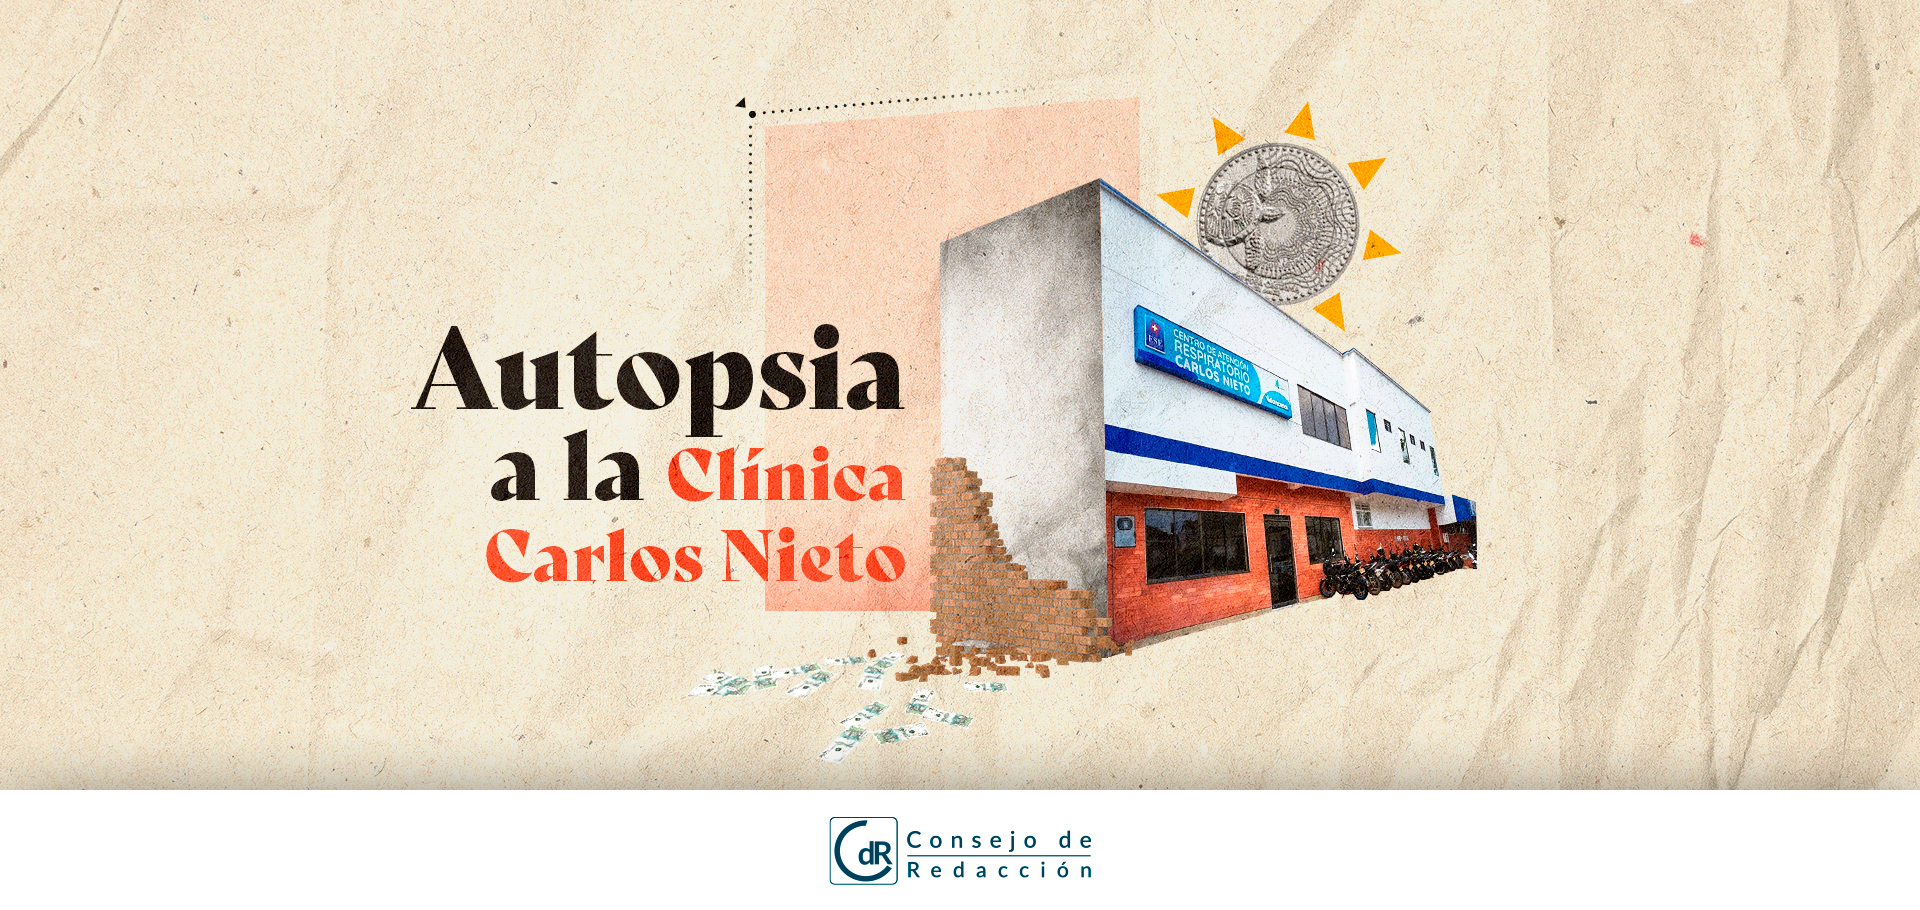 Autopsia a la clínica Carlos Nieto